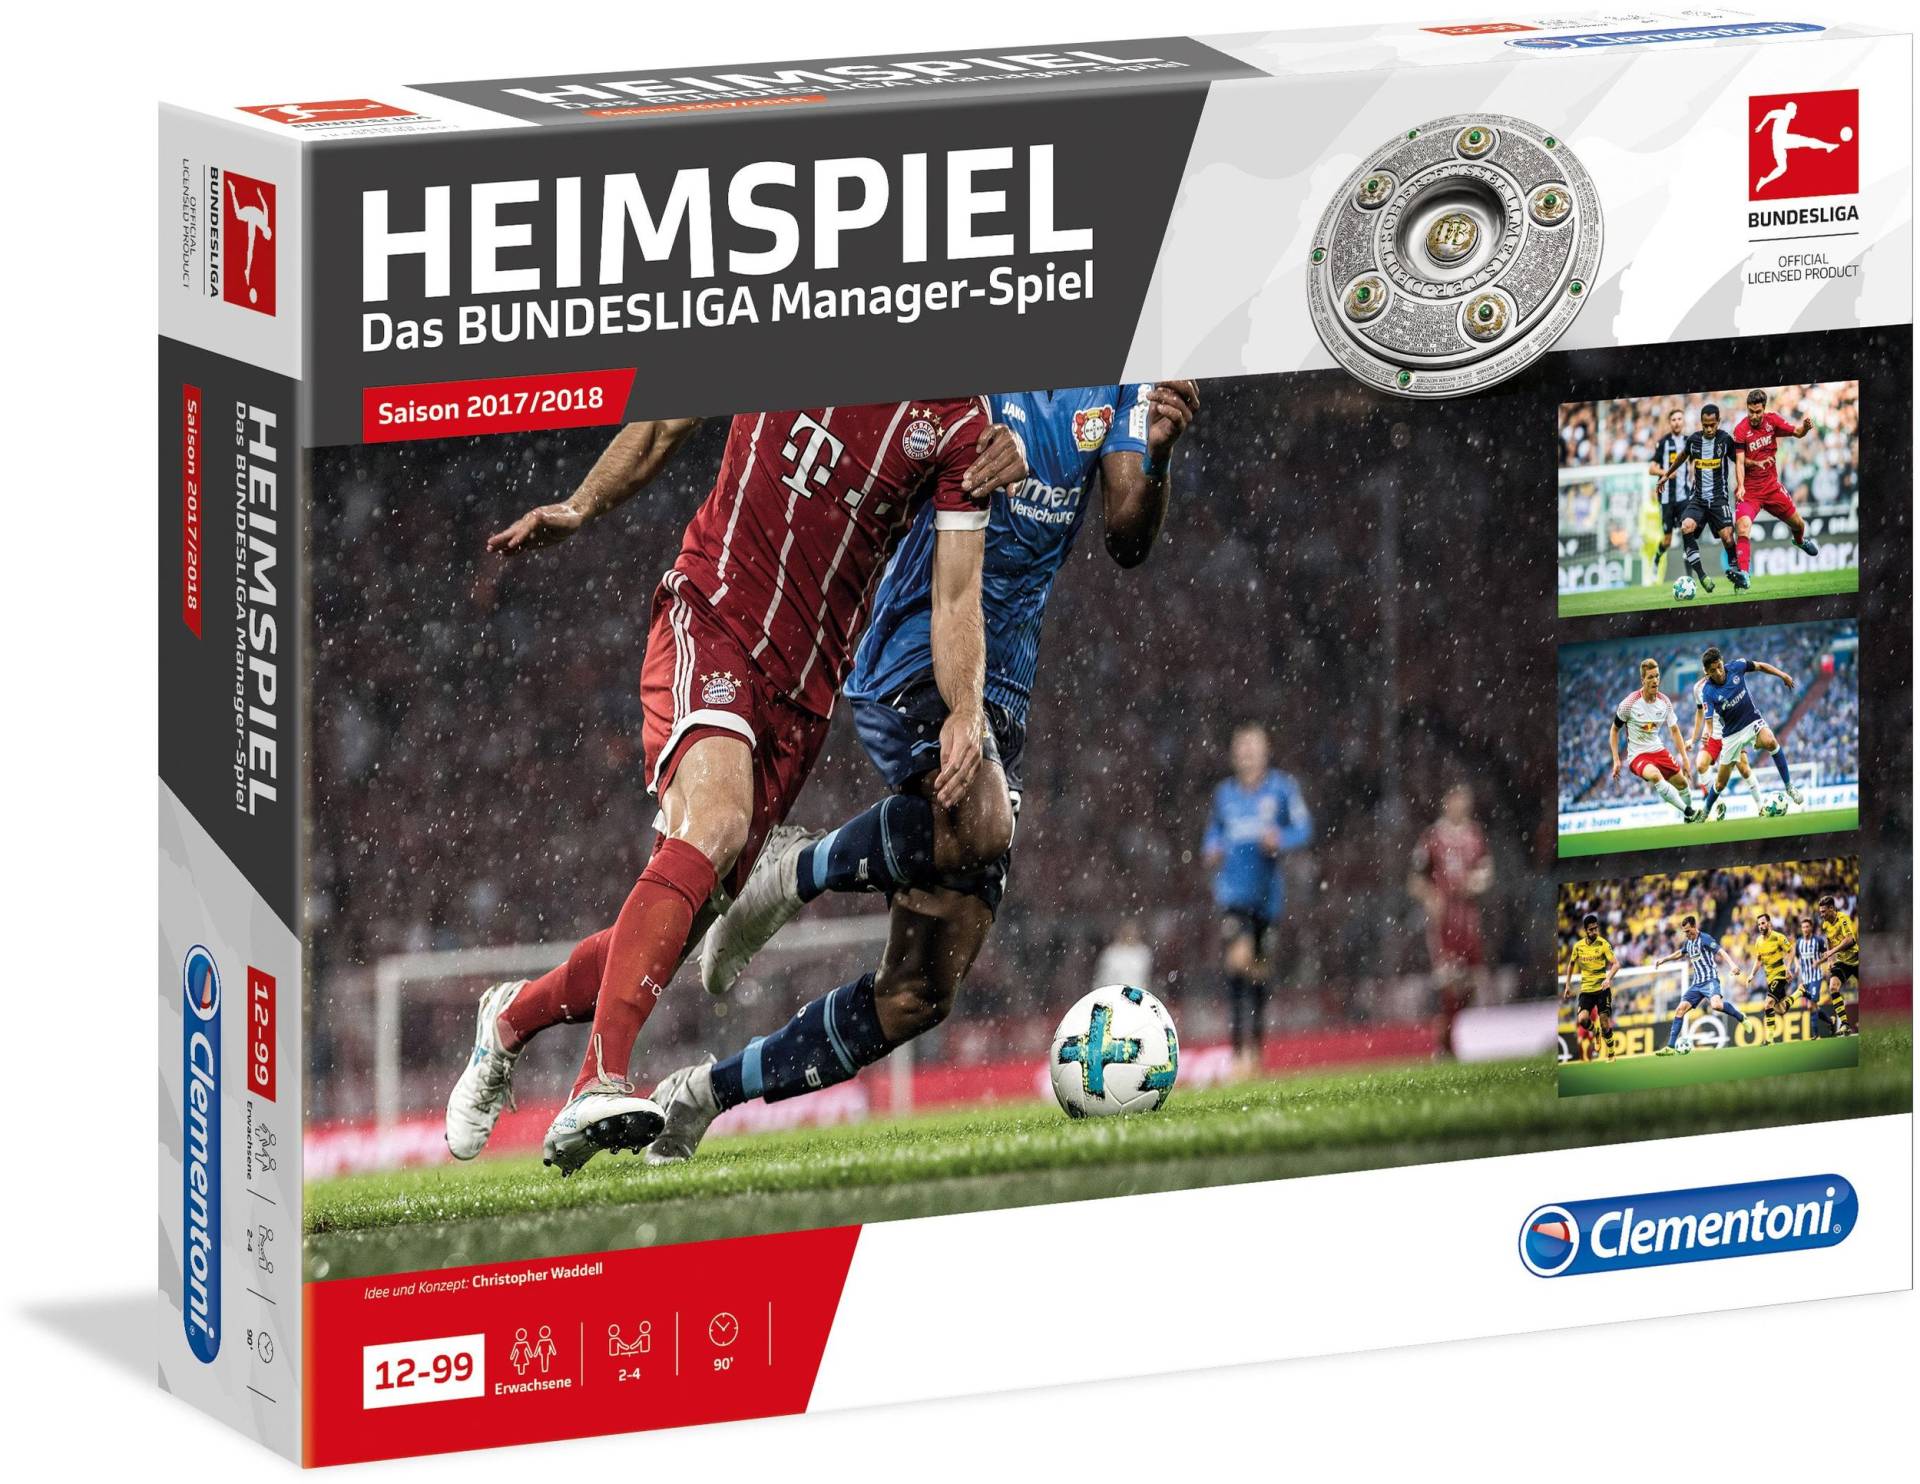 HEIMSPIEL Das große Bundesliga Manager-Spiel Saison 17/18 von Clementoni